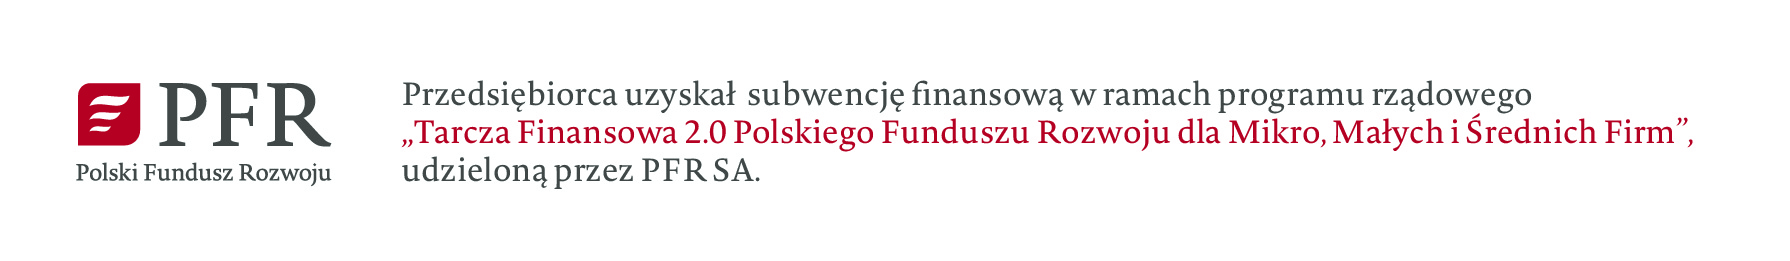 Przedsiębiorca uzyskał subwencję uzyskaną w ramach programu rządowego „Tarcza Finansowa 2.0 Polskiego Funduszu Rozwoju dla mikro, małych i średnich firm udzielona przez PFRSA” 